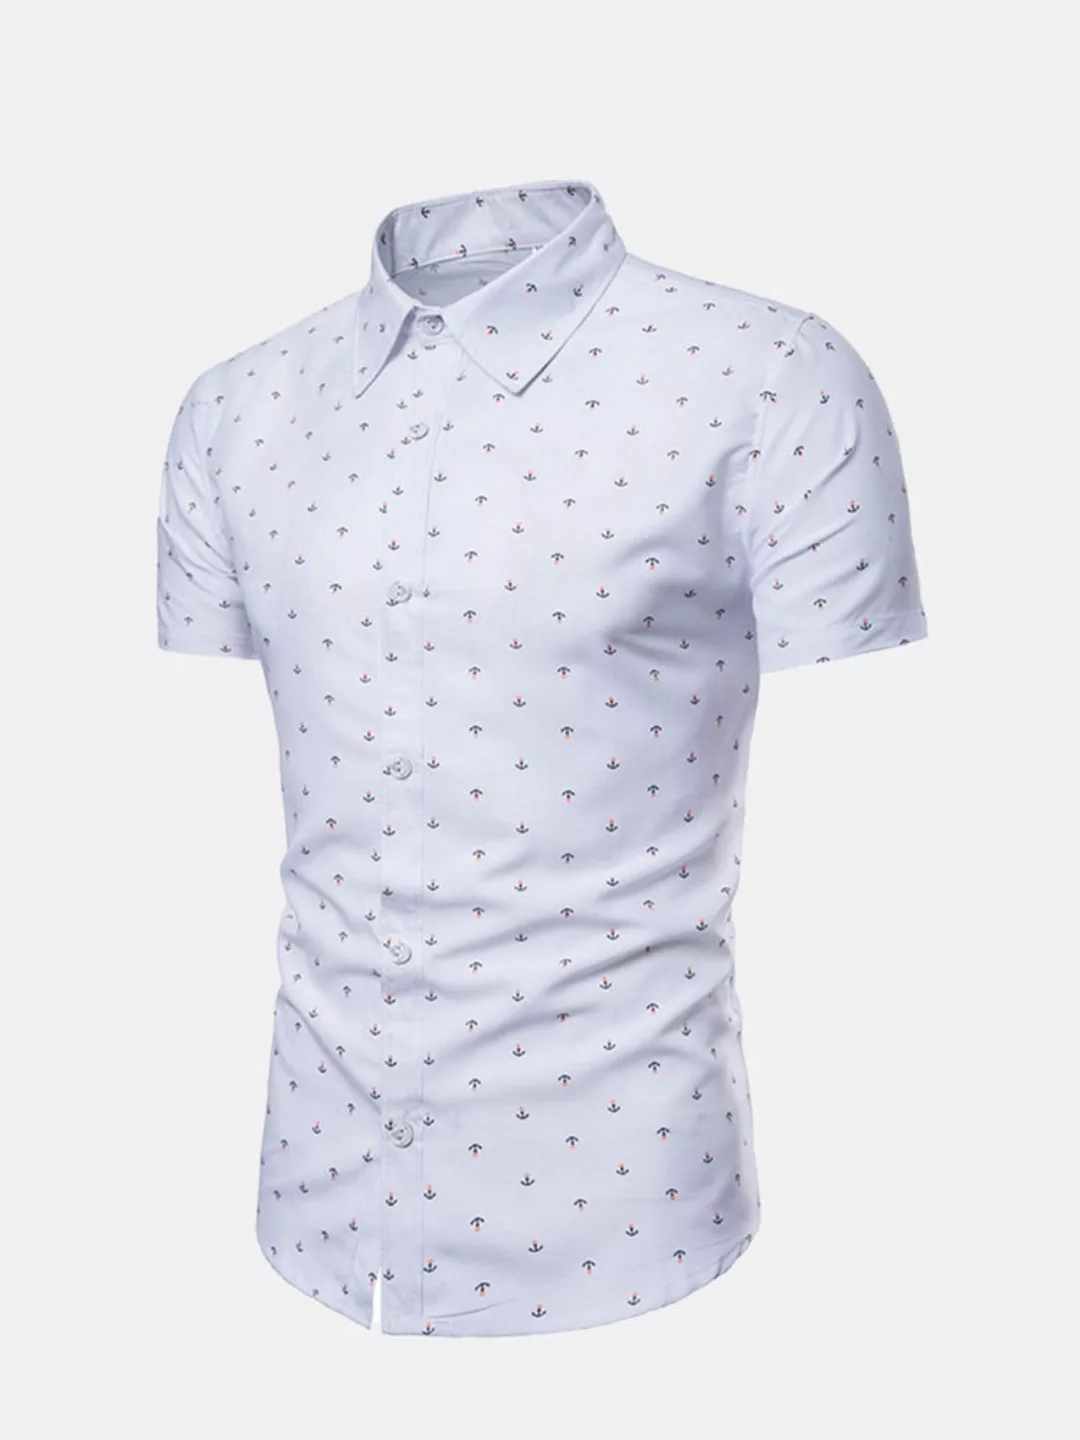 Lässige Anchor Printing Slim Fit Kurzarm Kleid Shirts für Männer günstig online kaufen